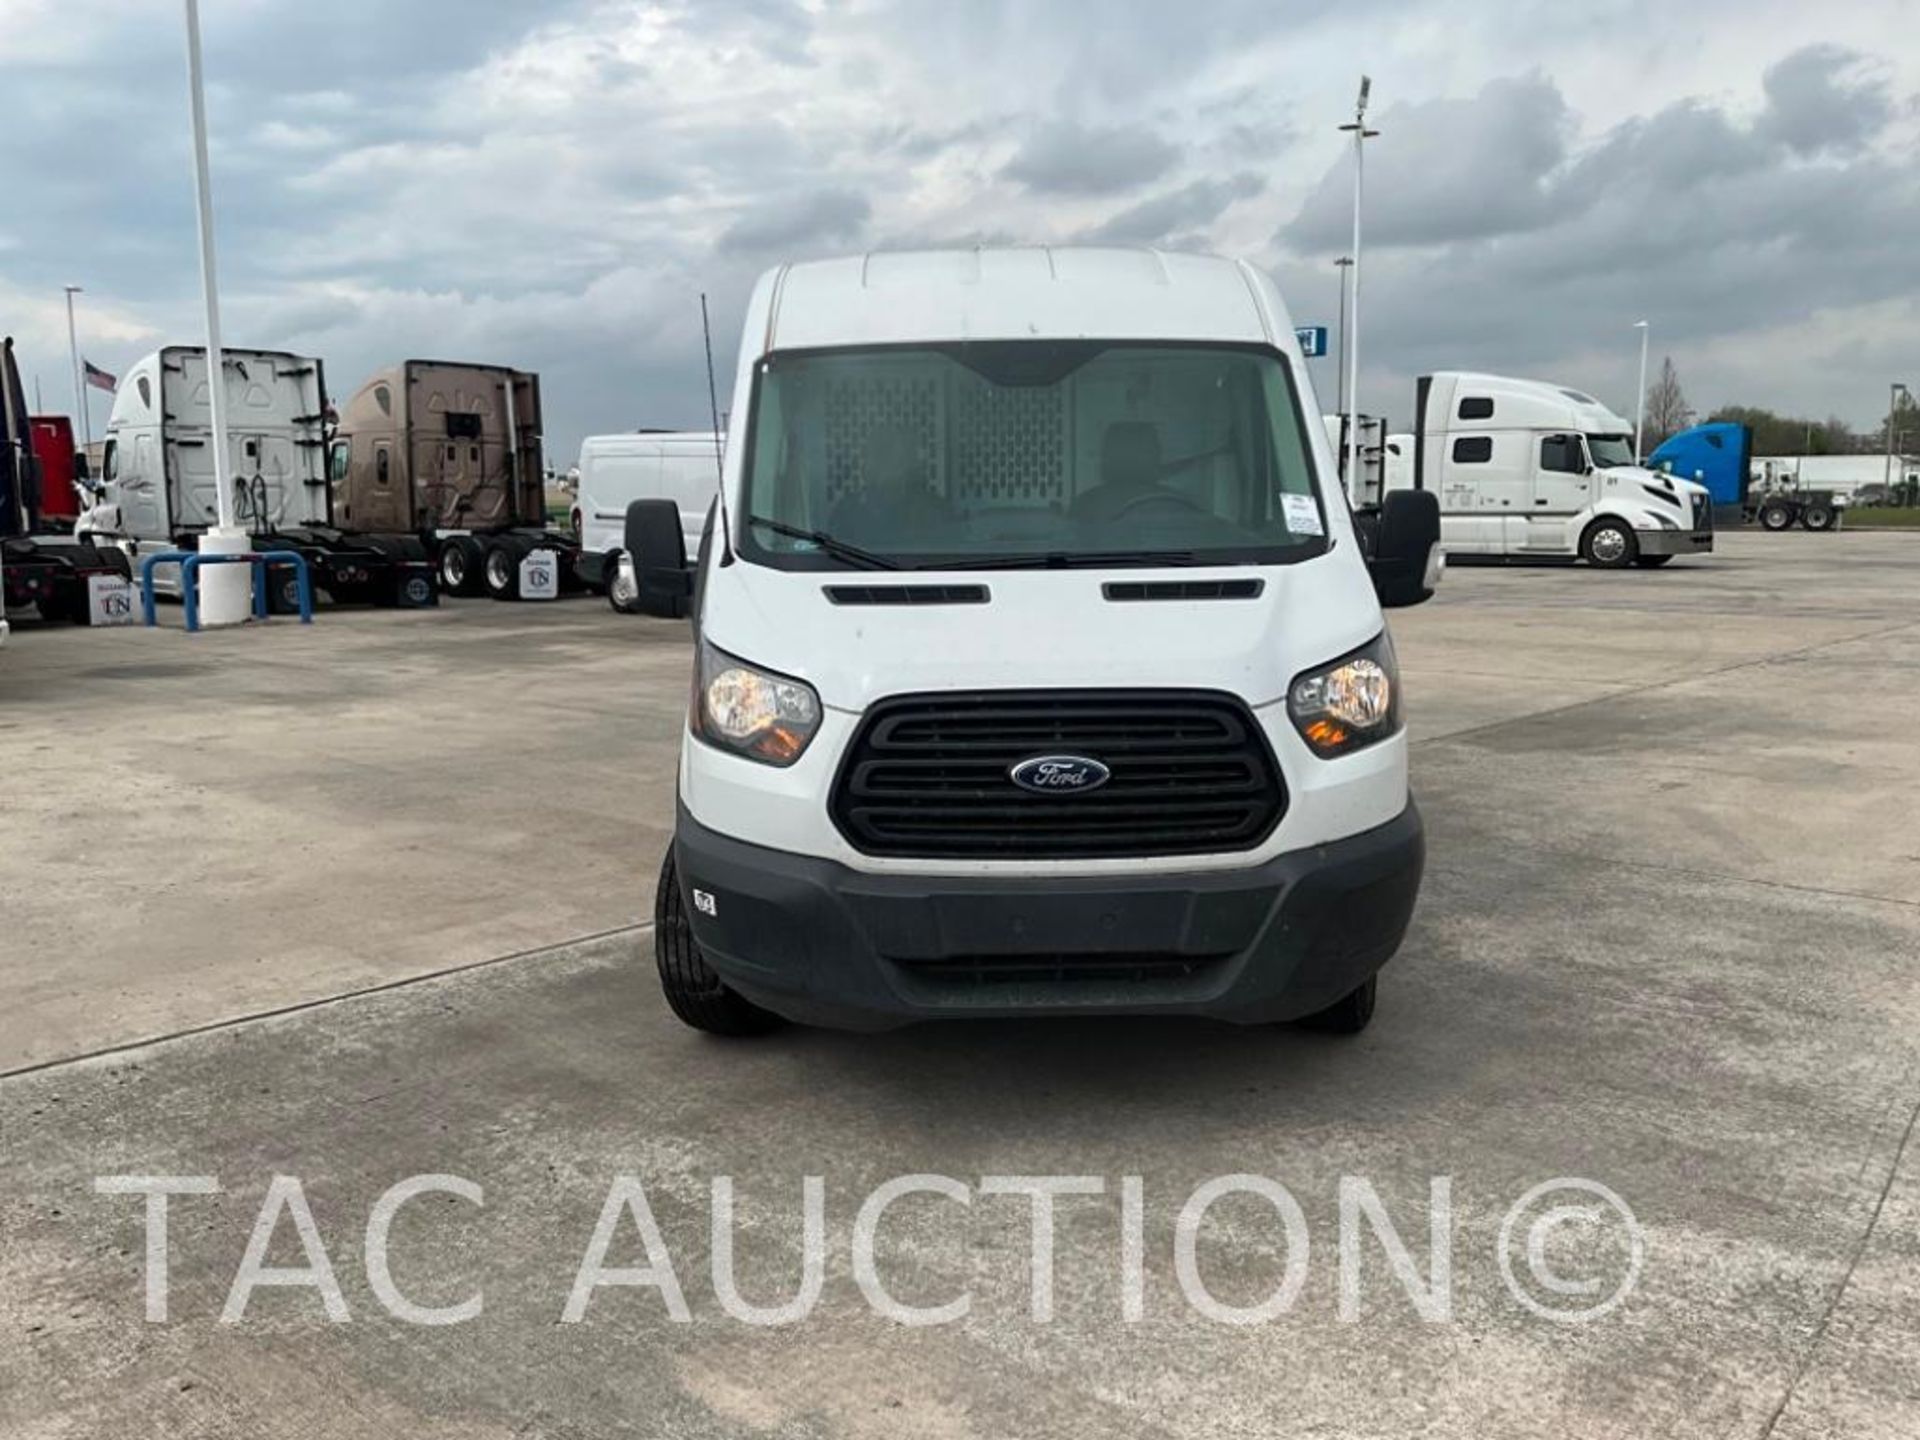 2019 Ford Transit 150 Cargo Van - Image 8 of 61